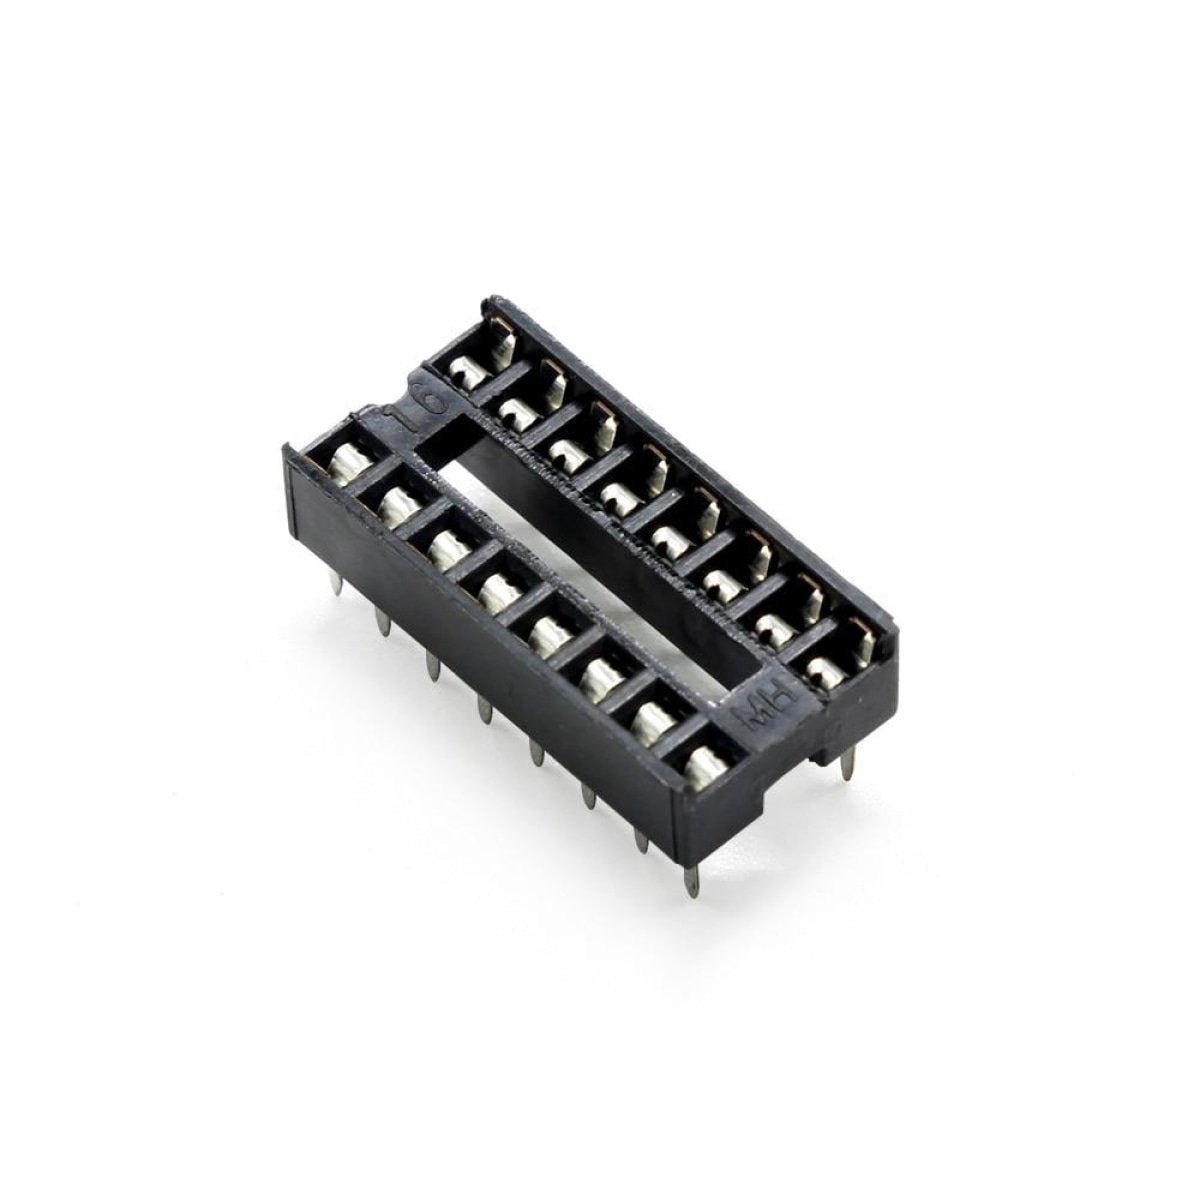 2pcs DIP IC Adaptor Solder Socket 6, 8, 14, 16, 18, 20, 24, 28, 32 Pin - 16 pins - - Asia Sell